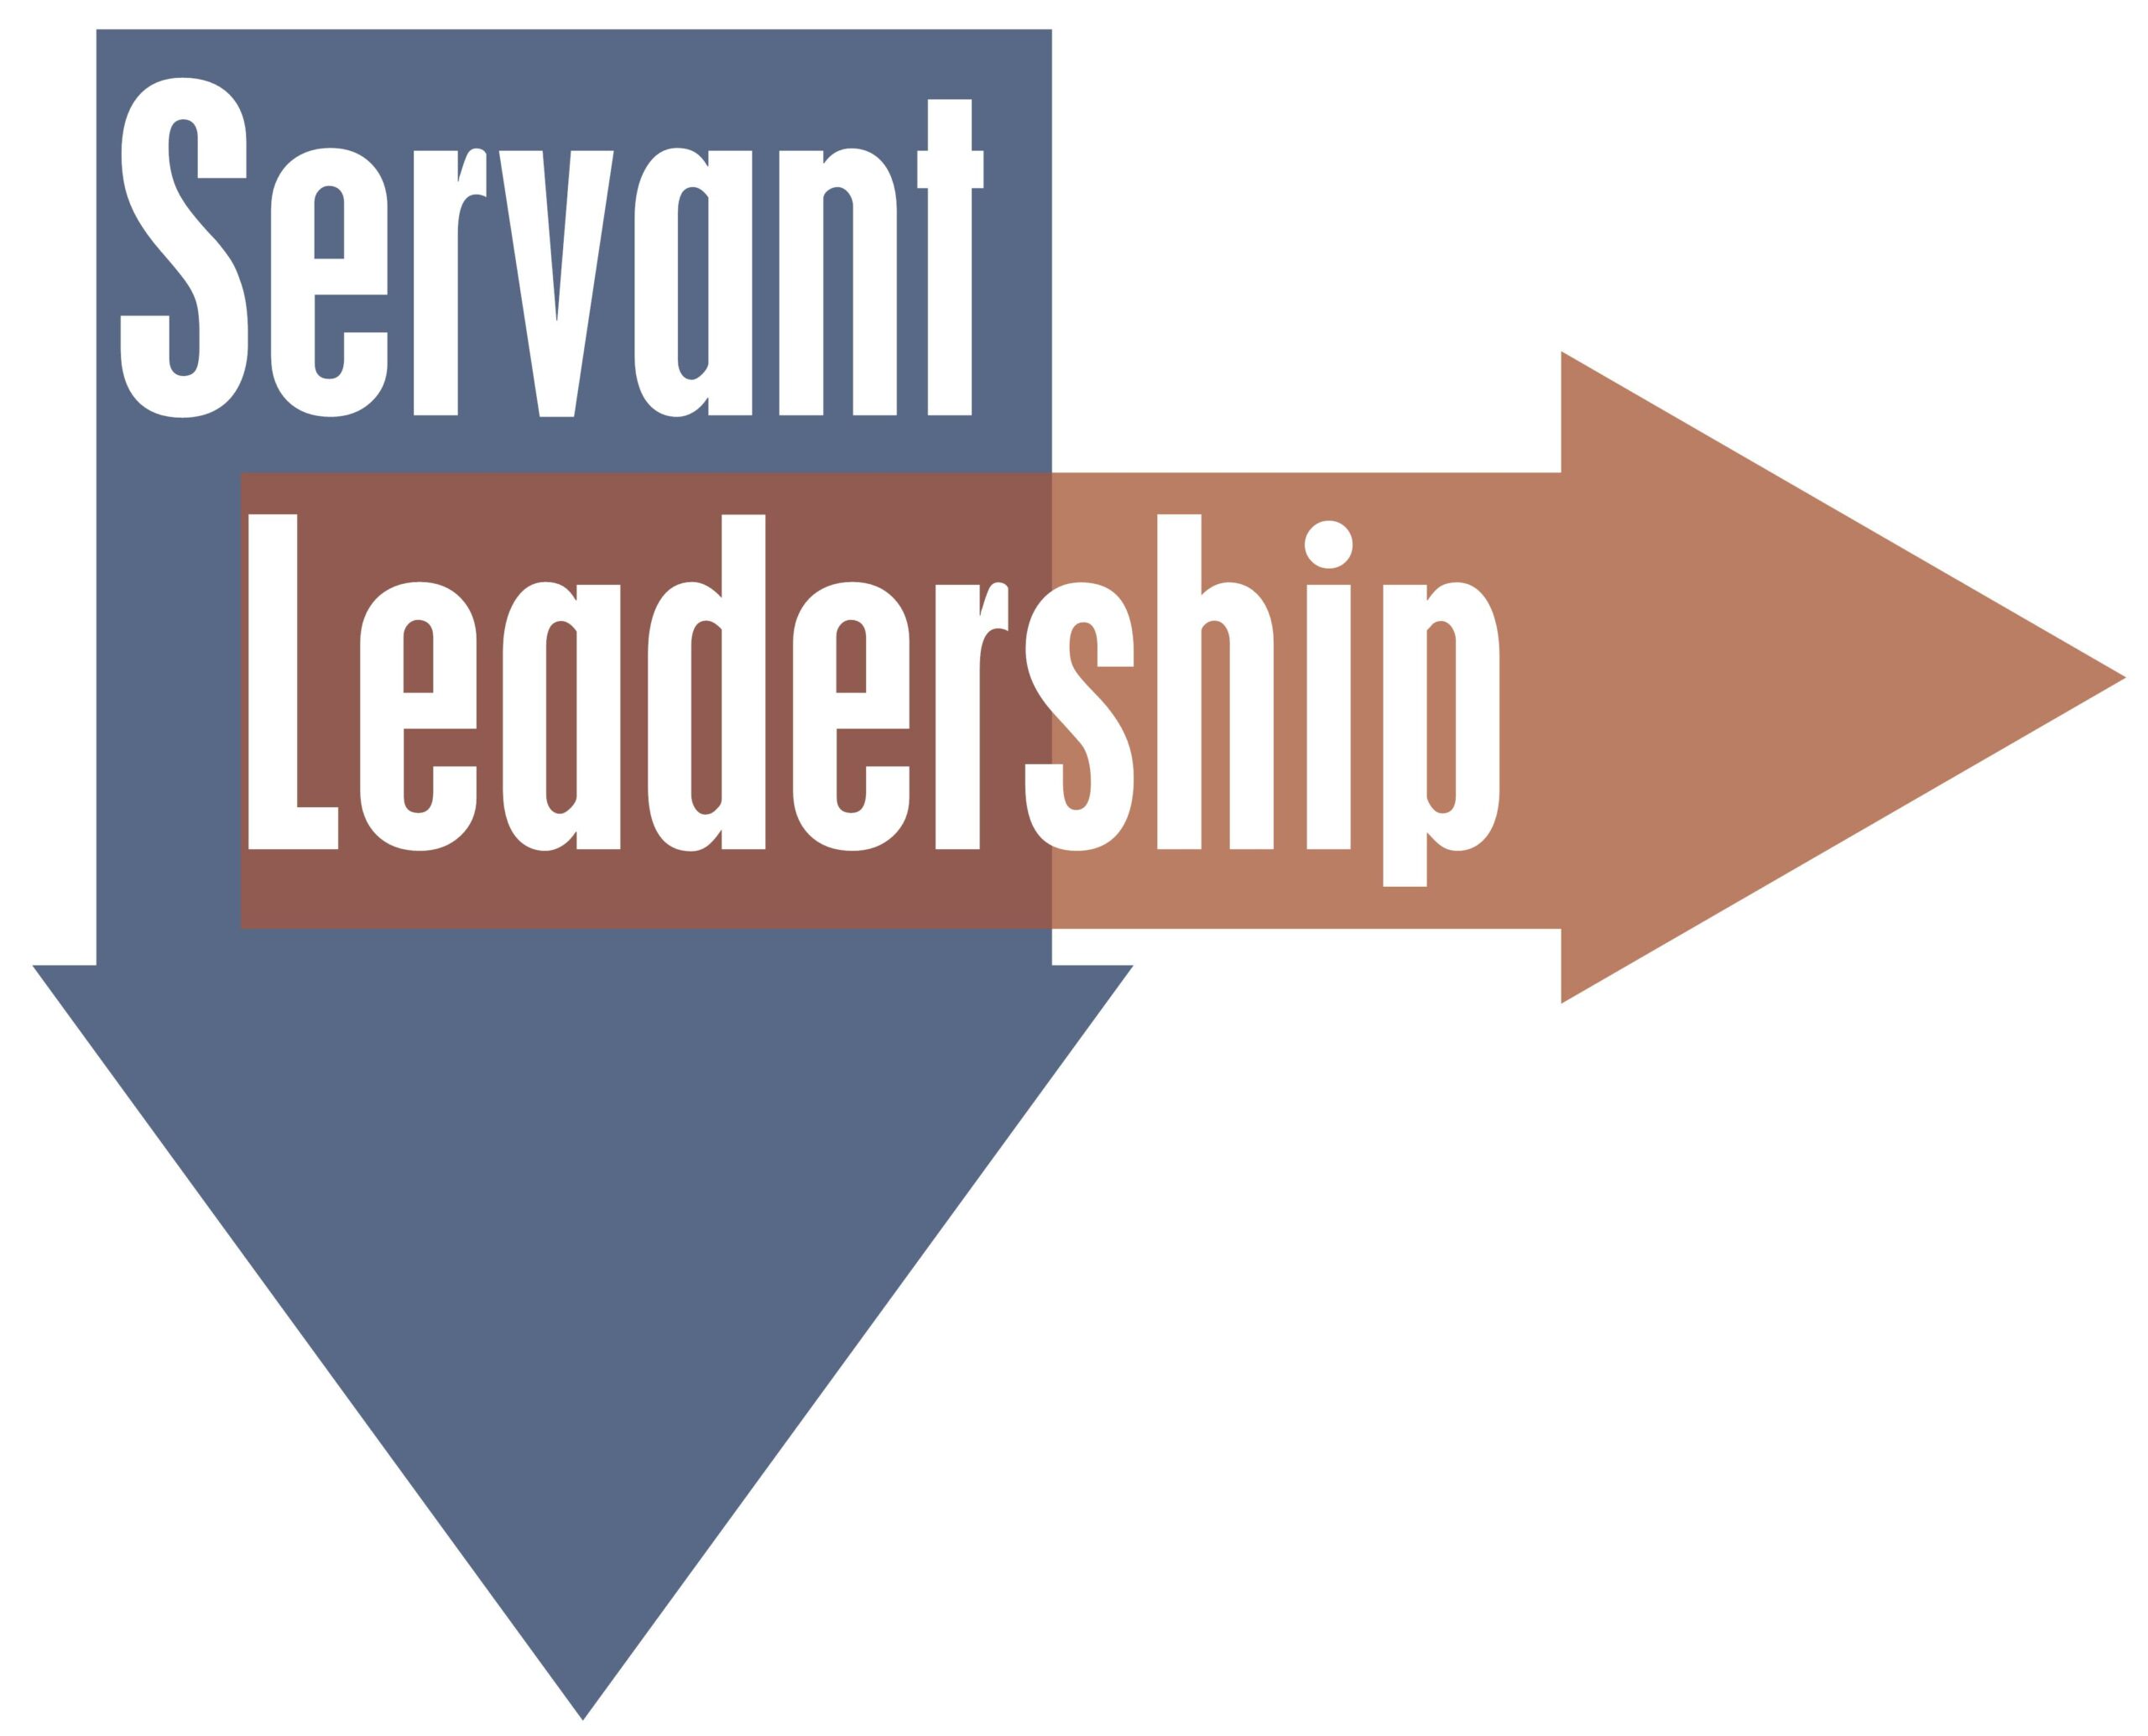 servant Leadership